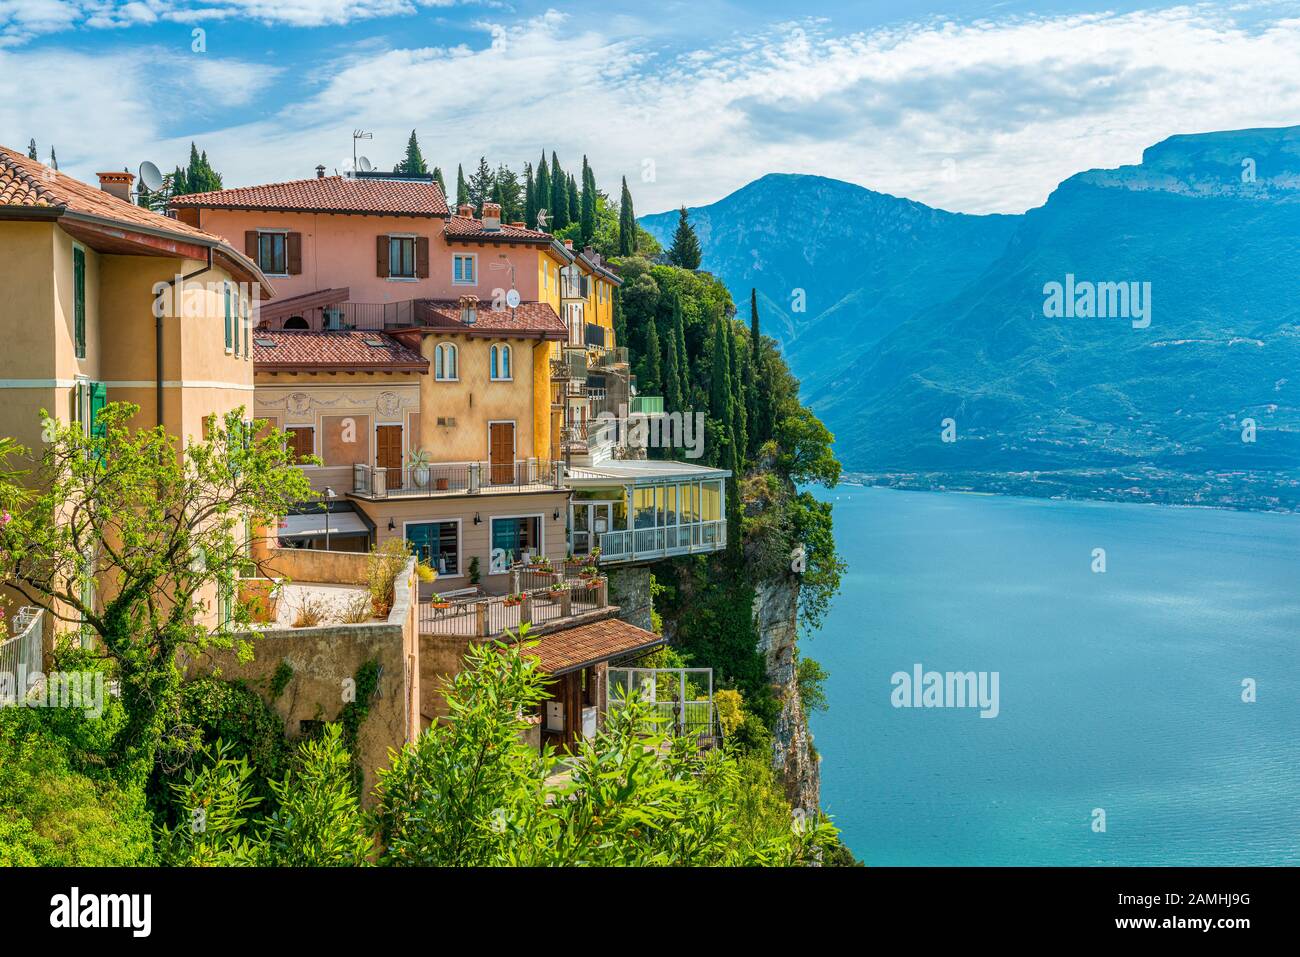 Vista panoramica di Tremosine sul Garda, villaggio sul lago di Garda in provincia di Brescia, Lombardia, Italia. Foto Stock